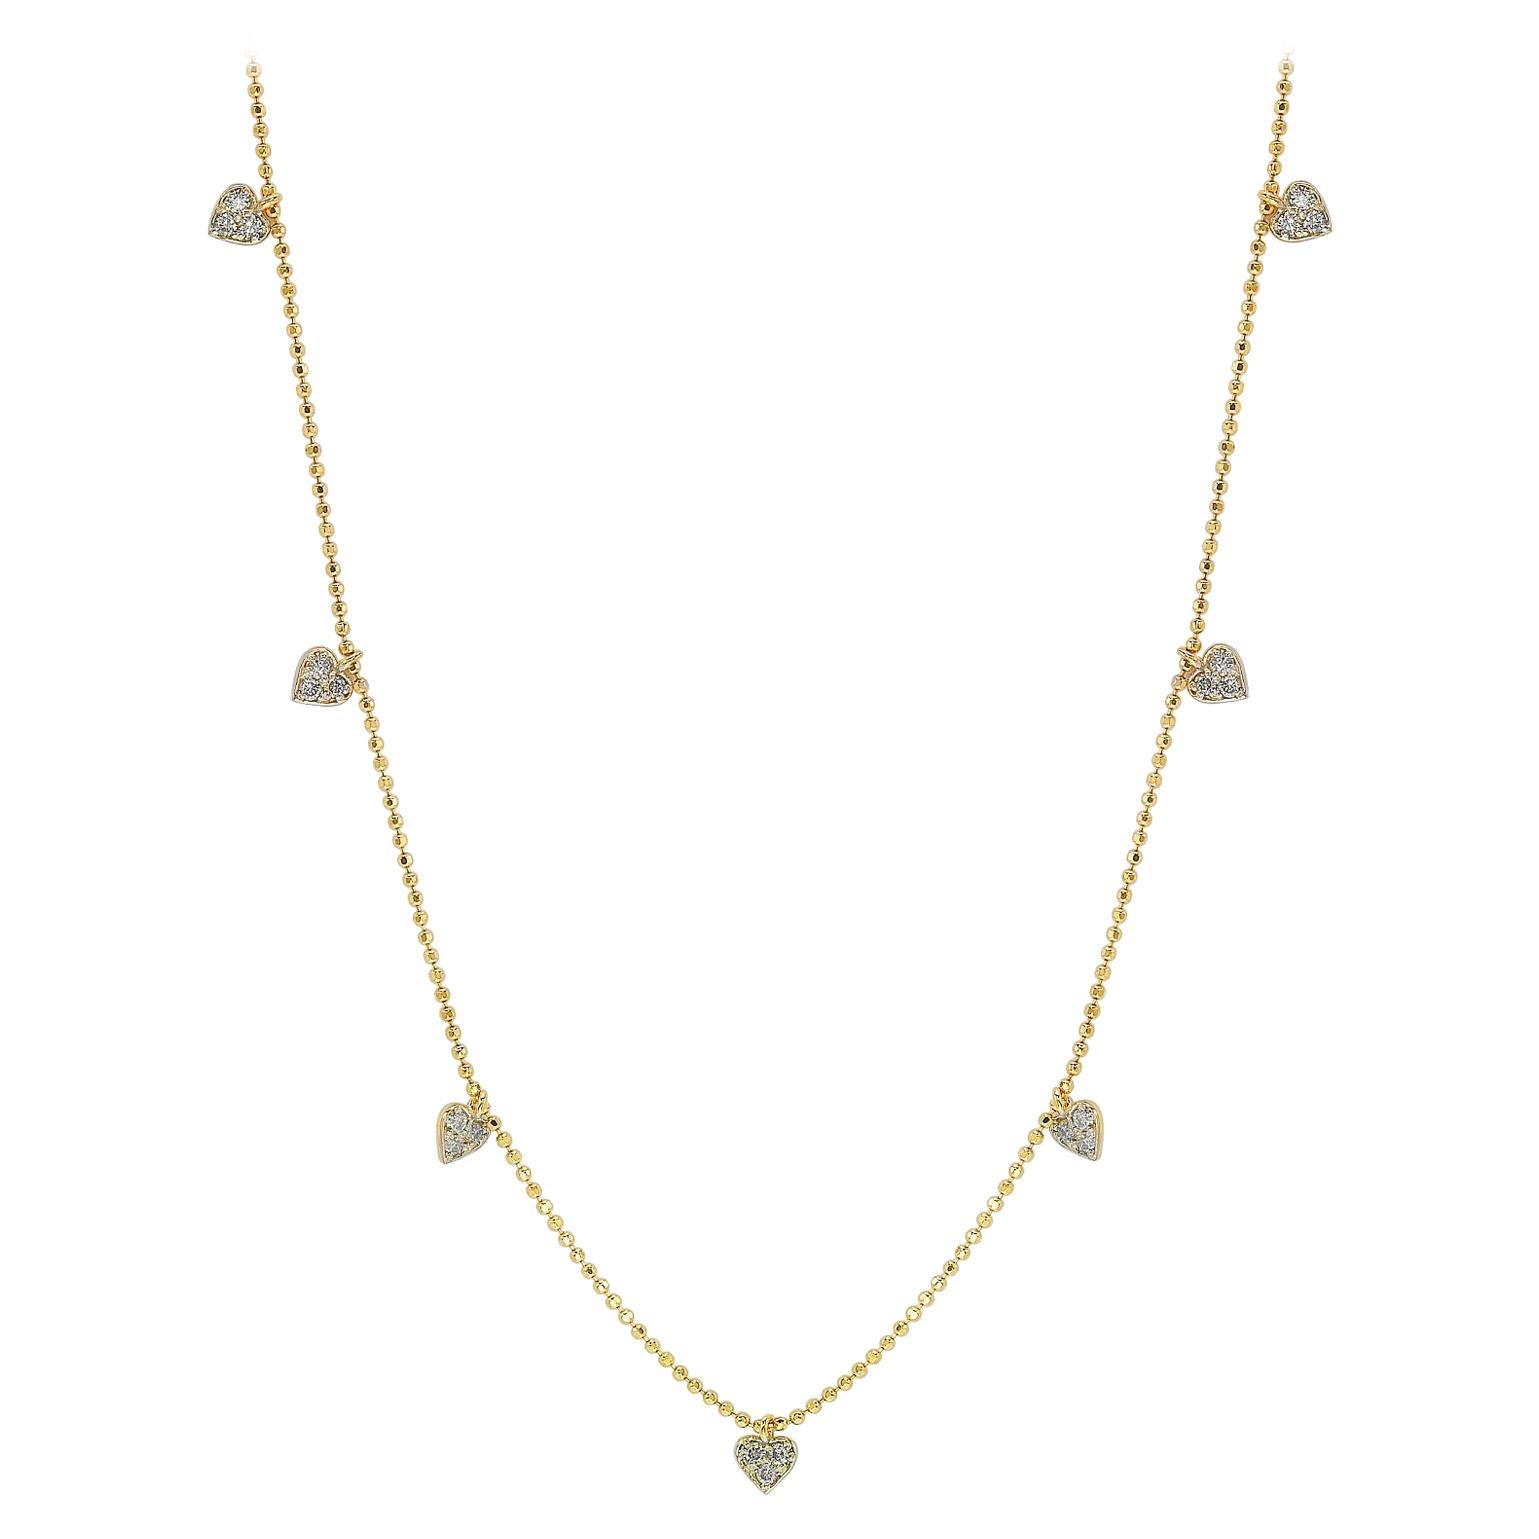 Suzy Levian: 14 Karat Gelbgold Herz-Halskette mit weißen Diamanten